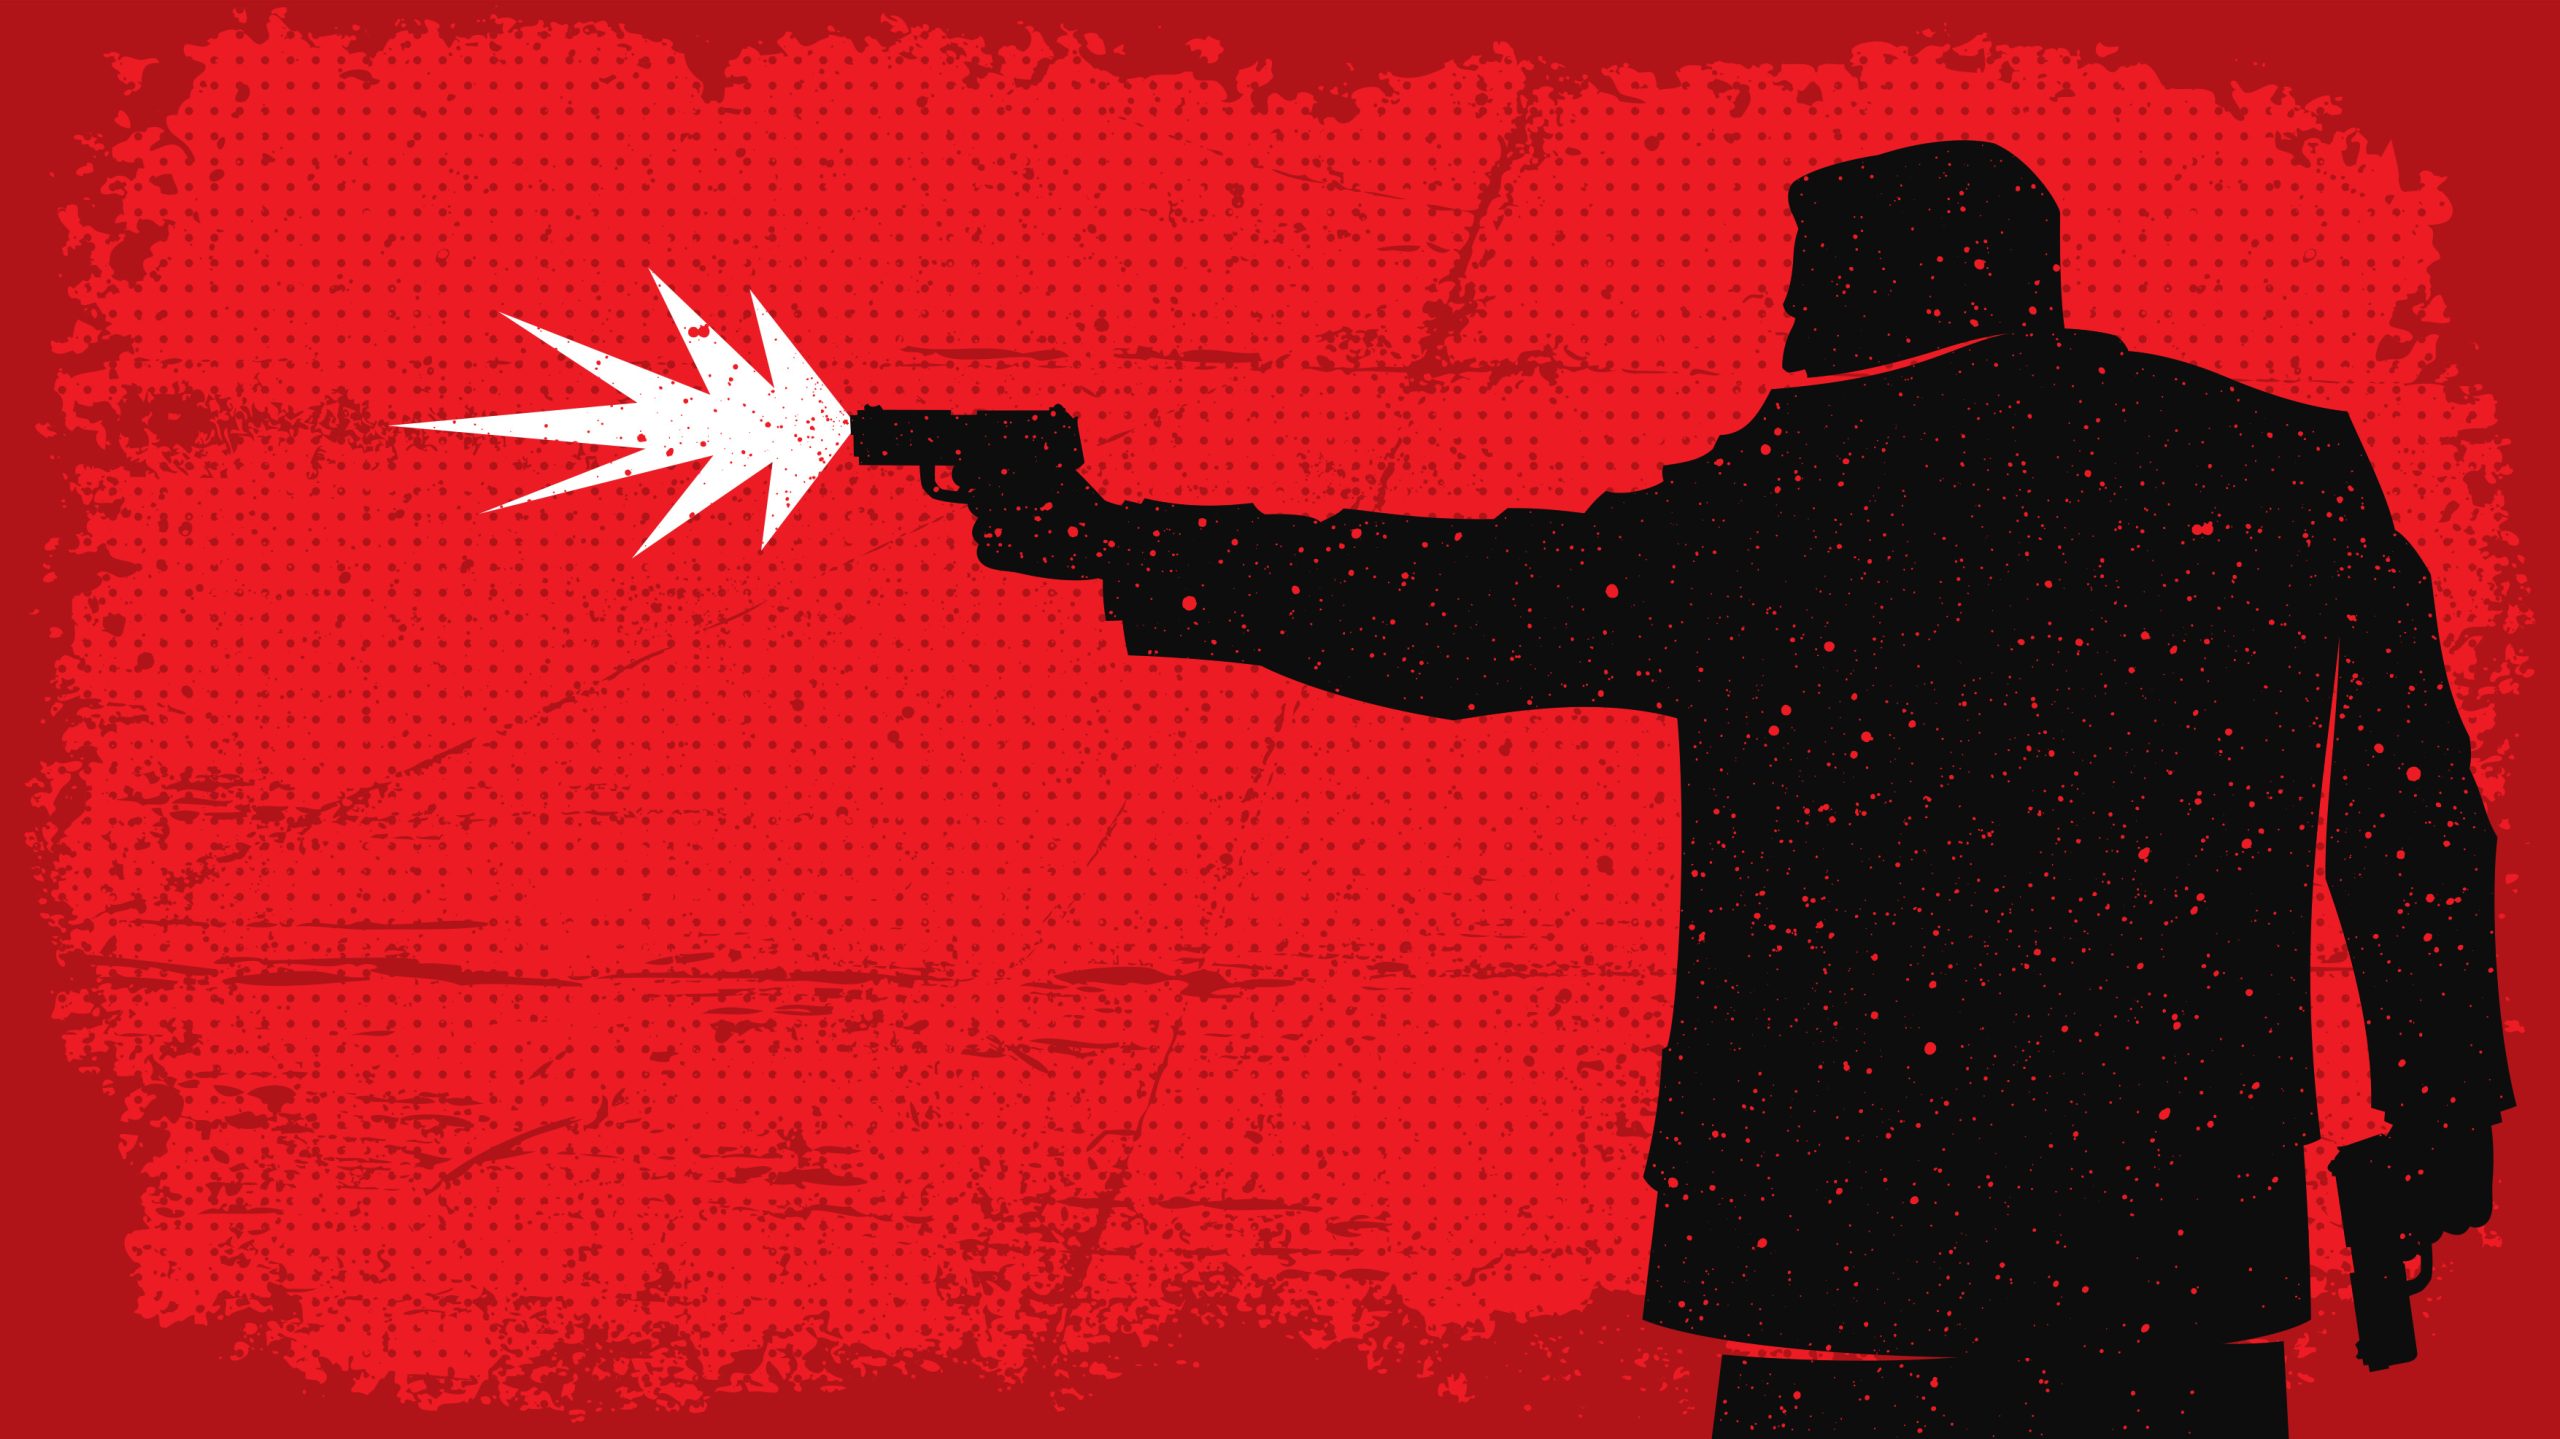 Imagem ilustrativa mostra um homem disparando uma pistola, simbolizando um assassino